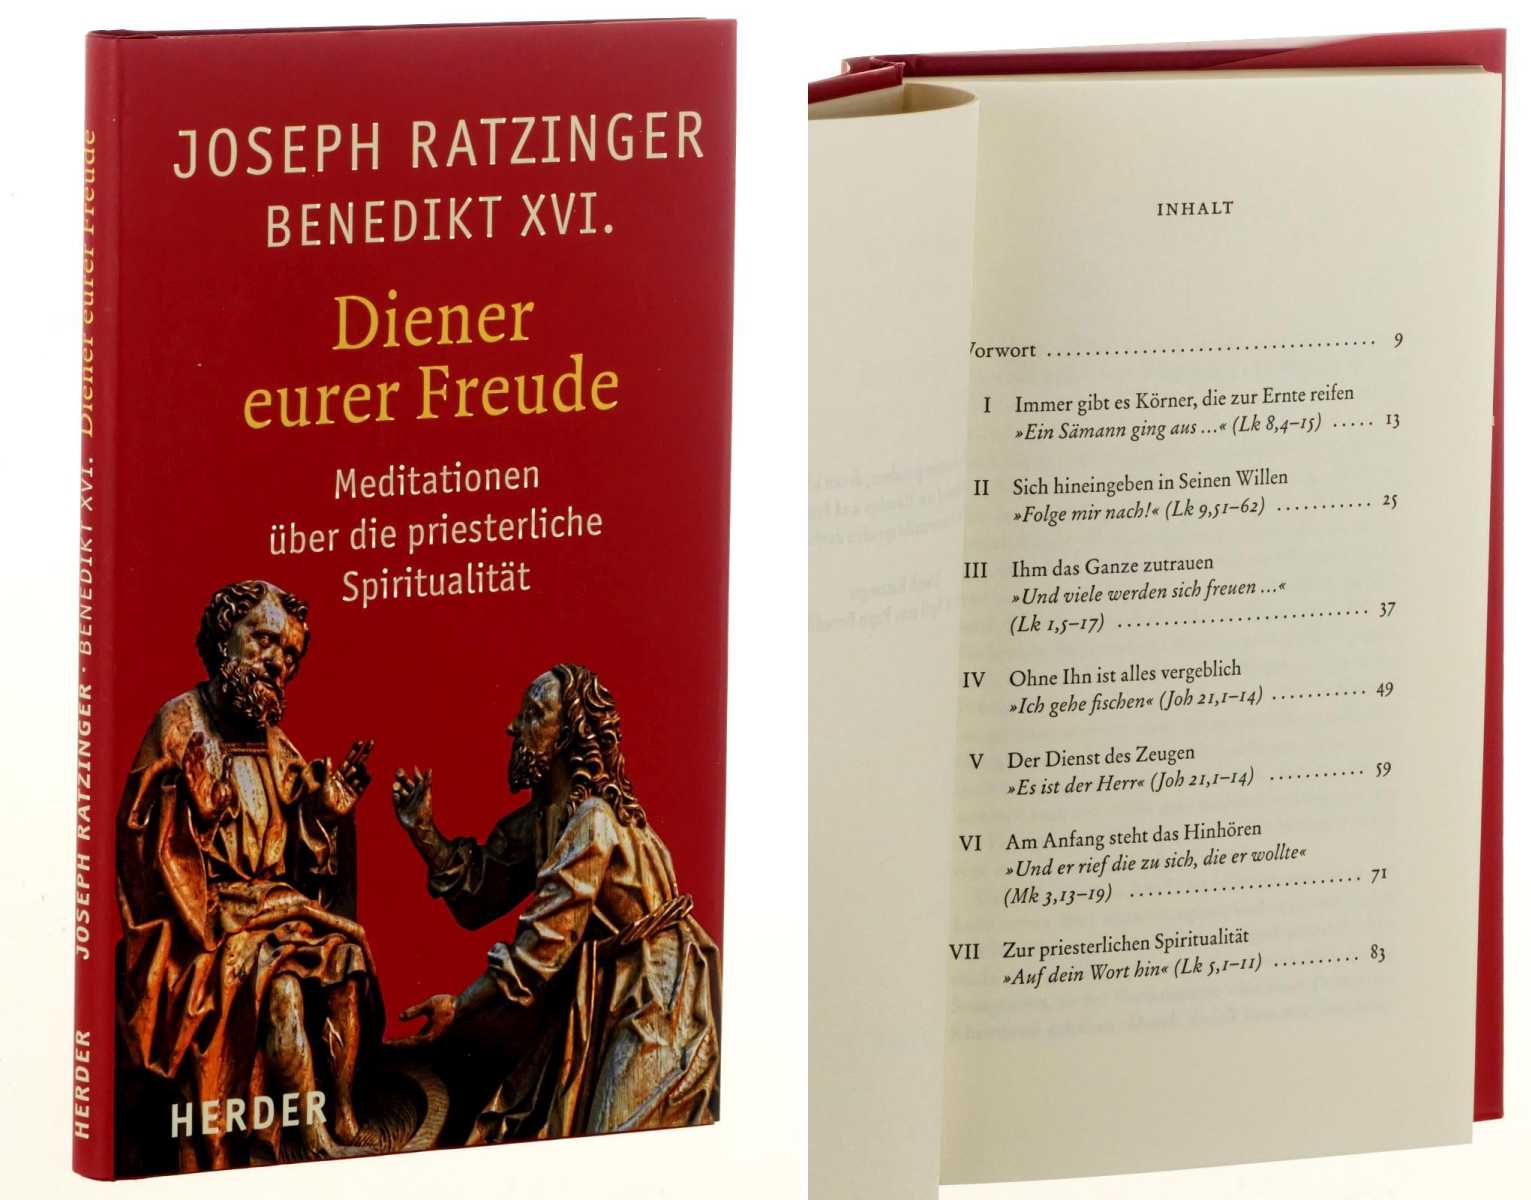 Ratzinger, Joseph/ Benedikt XVI.:  Diener eurer Freude. Meditationen über die priesterliche Spiritualität. 